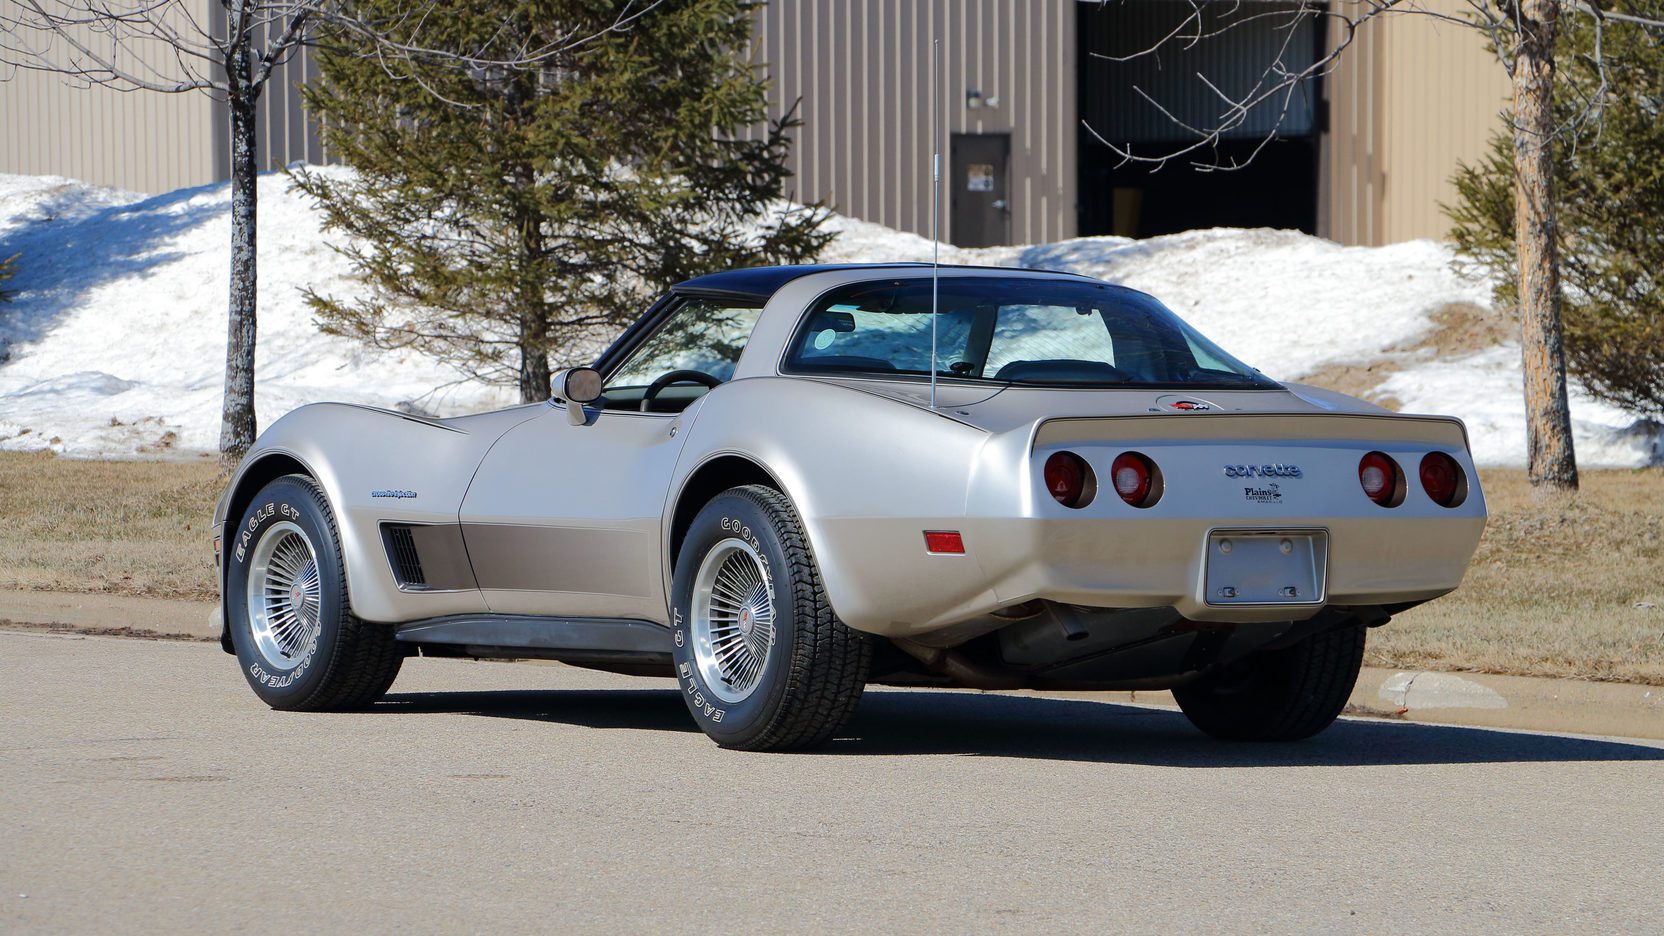 1982 Corvette